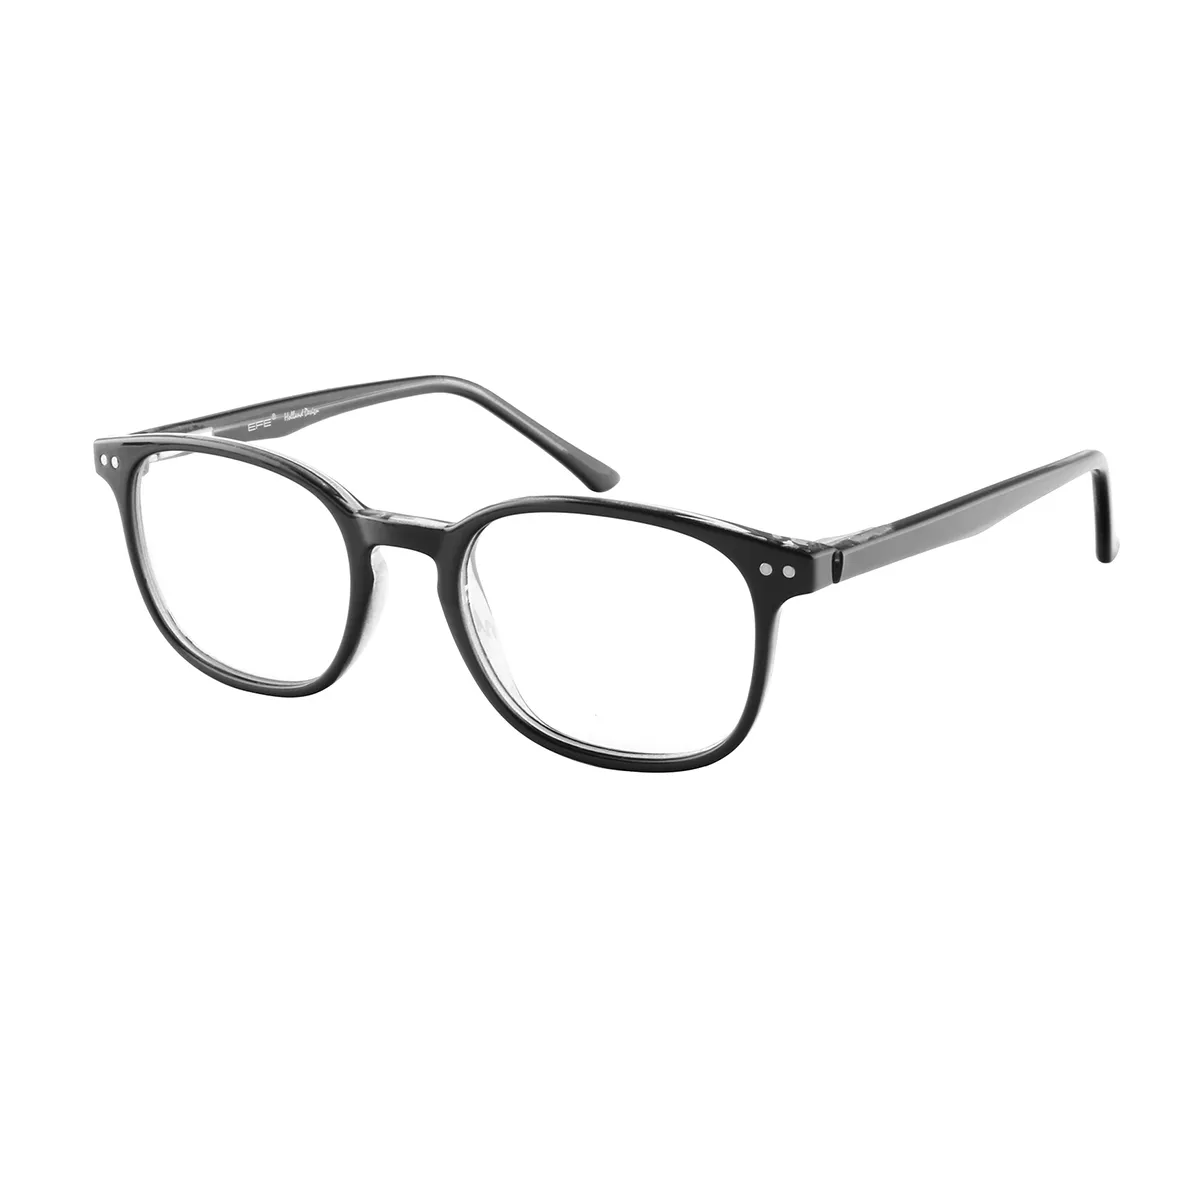 Classic Square Demi Eyeglasses for Women & Men